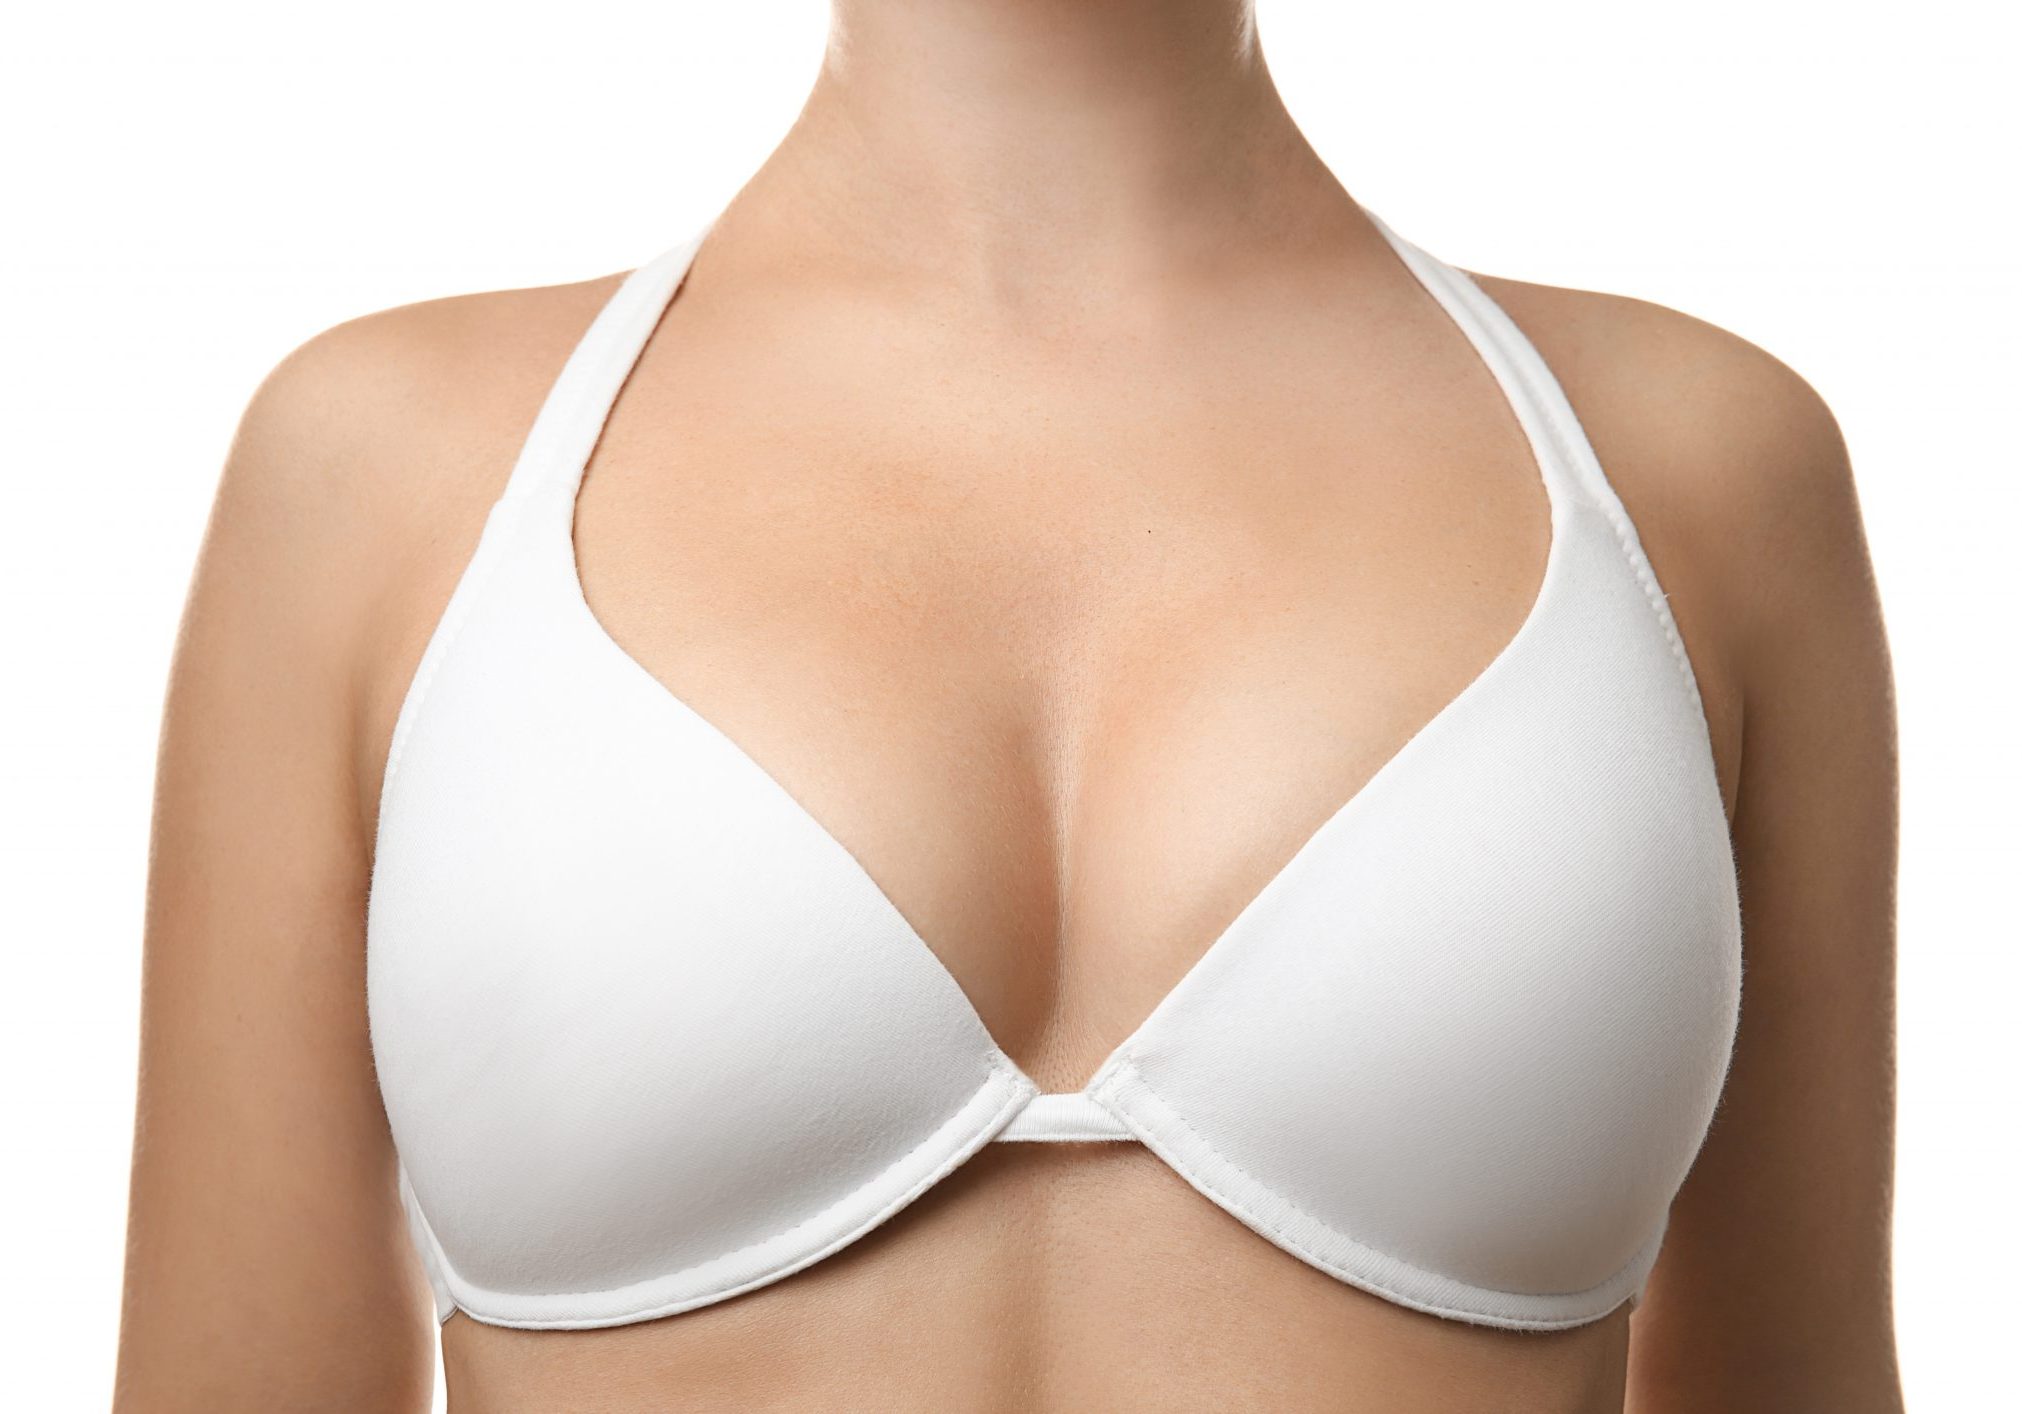 Plastic surgery concept. Woman in white bra, closeup